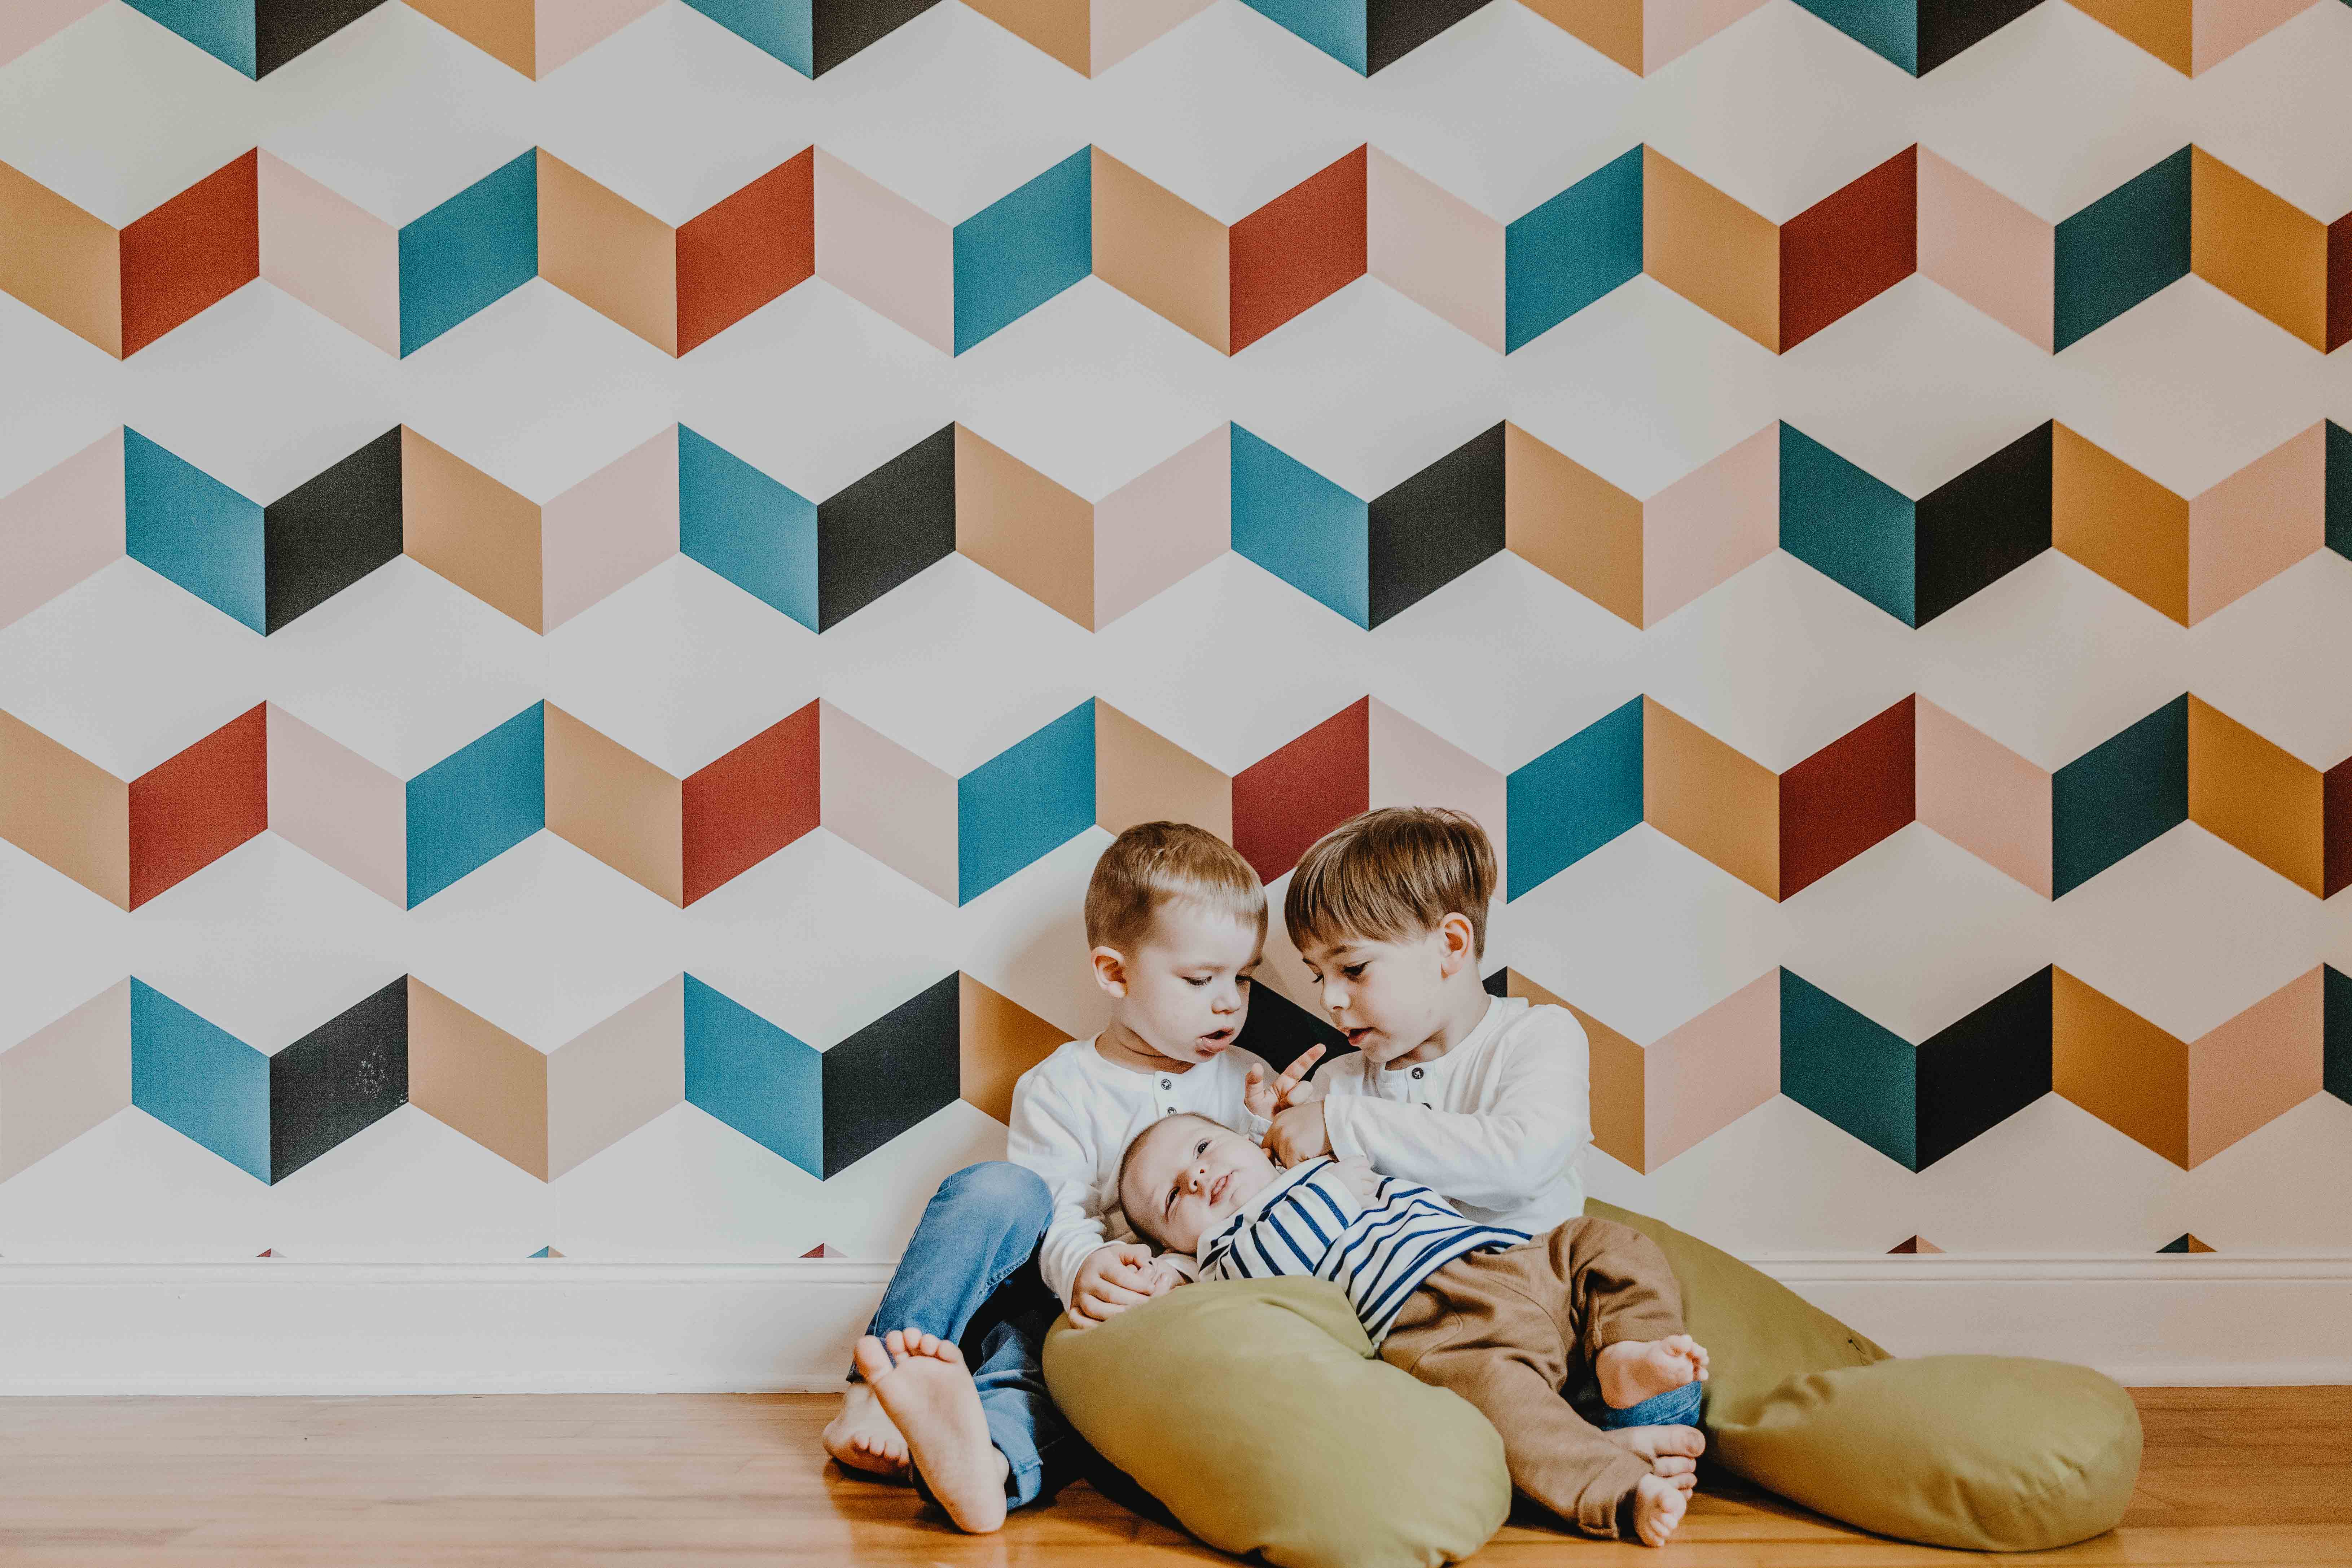 séance photo famille lifestyle à domicile. les enfants sont assis par terre contre un mur à tapisserie graphique et colorée. les grands frère tiennent bébé dans leurs bras et le regardent